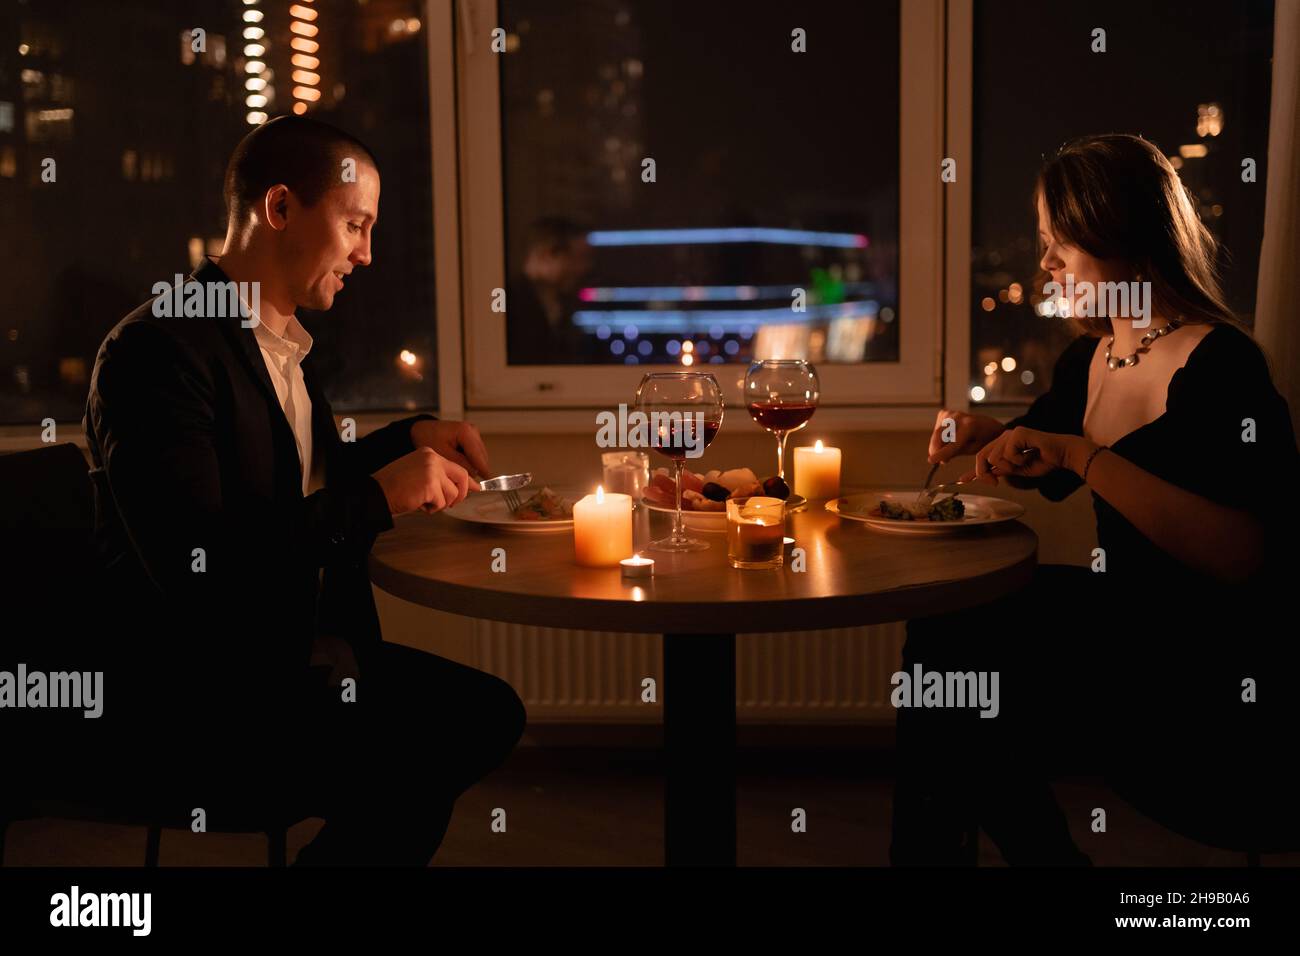 Romantisches Abendessen für zwei, verliebte Paare haben Valentinstag-Abendessen mit Kerzen, Dattsnacht in einem Restaurant, Hochzeitstag Familie Essen Stockfoto